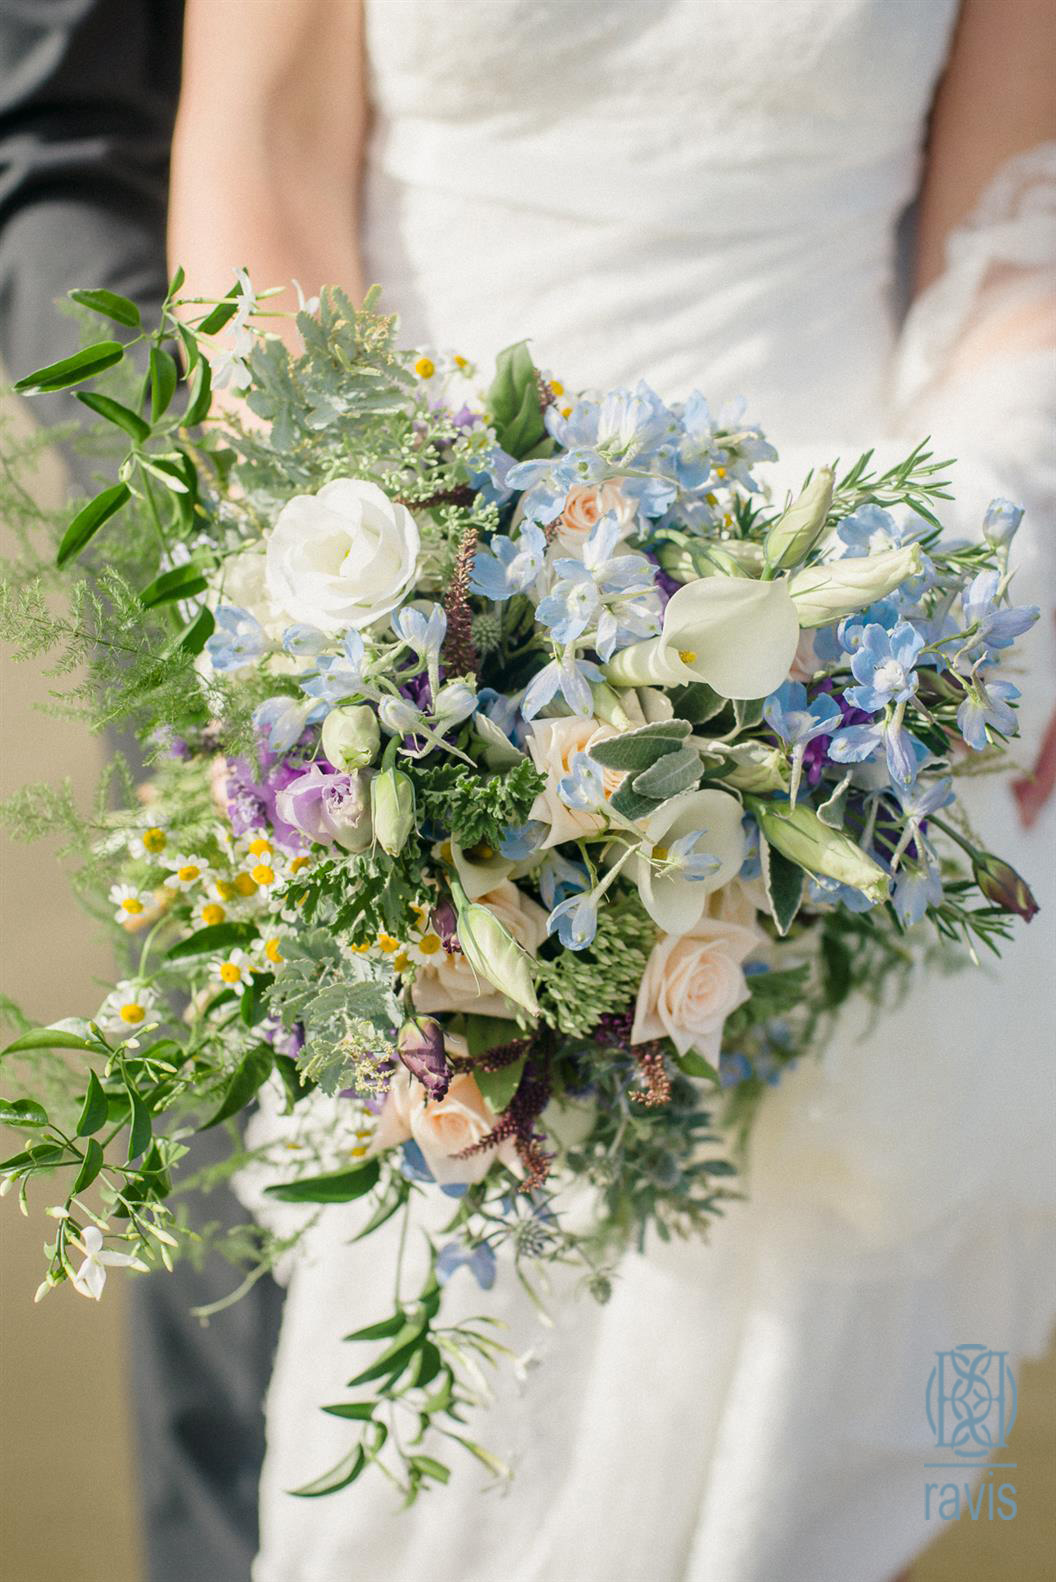 دسته گل عروس با گل‌های وحشی| دسته گل| دسته گل عروس| آرایشگاه زنانه| انتخاب دسته گل عروس| خوشبو بودن گلهای وحشی